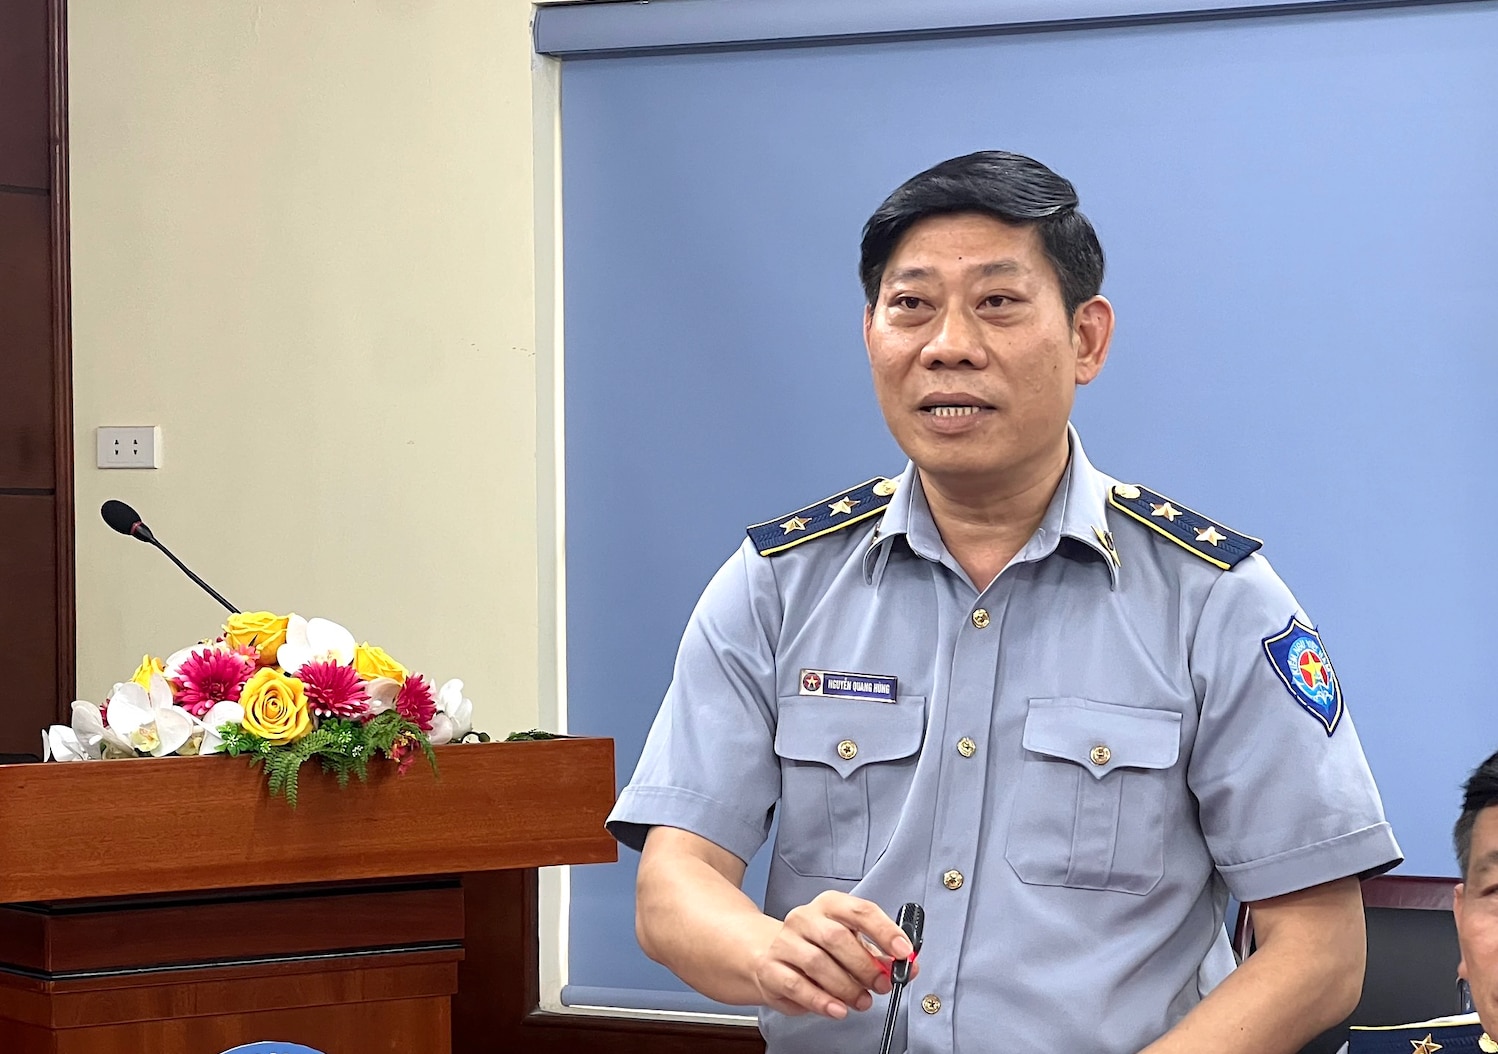 Chính sách - Lực lượng kiểm ngư Việt Nam: Chế độ thấp, khó tuyển người